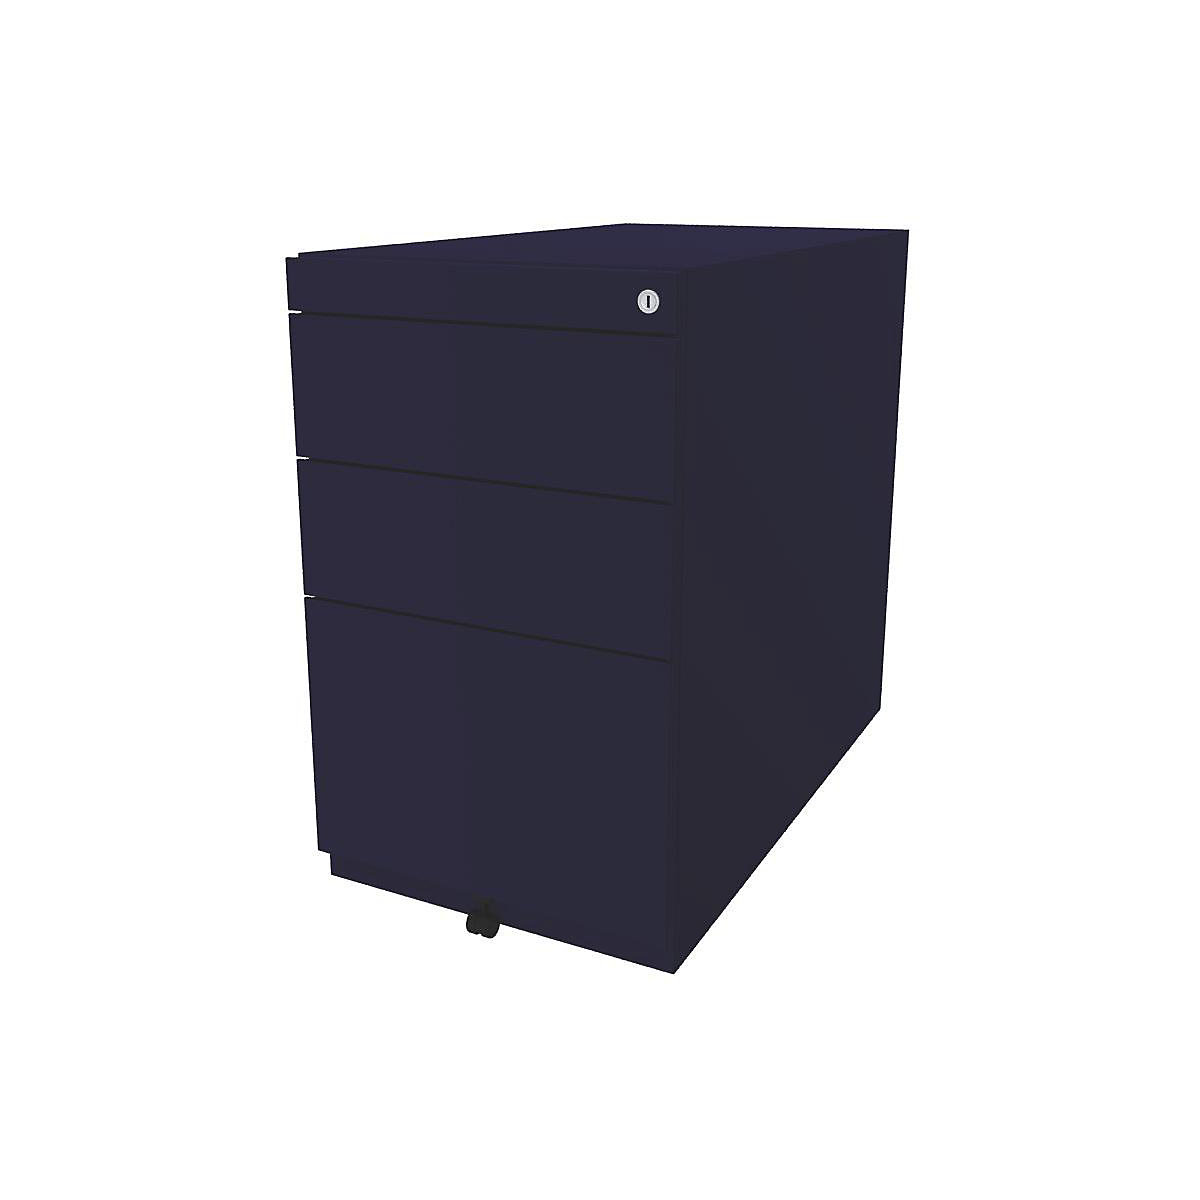 BISLEY Standcontainer Note™, mit 2 Universalschubladen, 1 Hängeregistratur, ohne Top, Tiefe 775 mm, oxfordblau